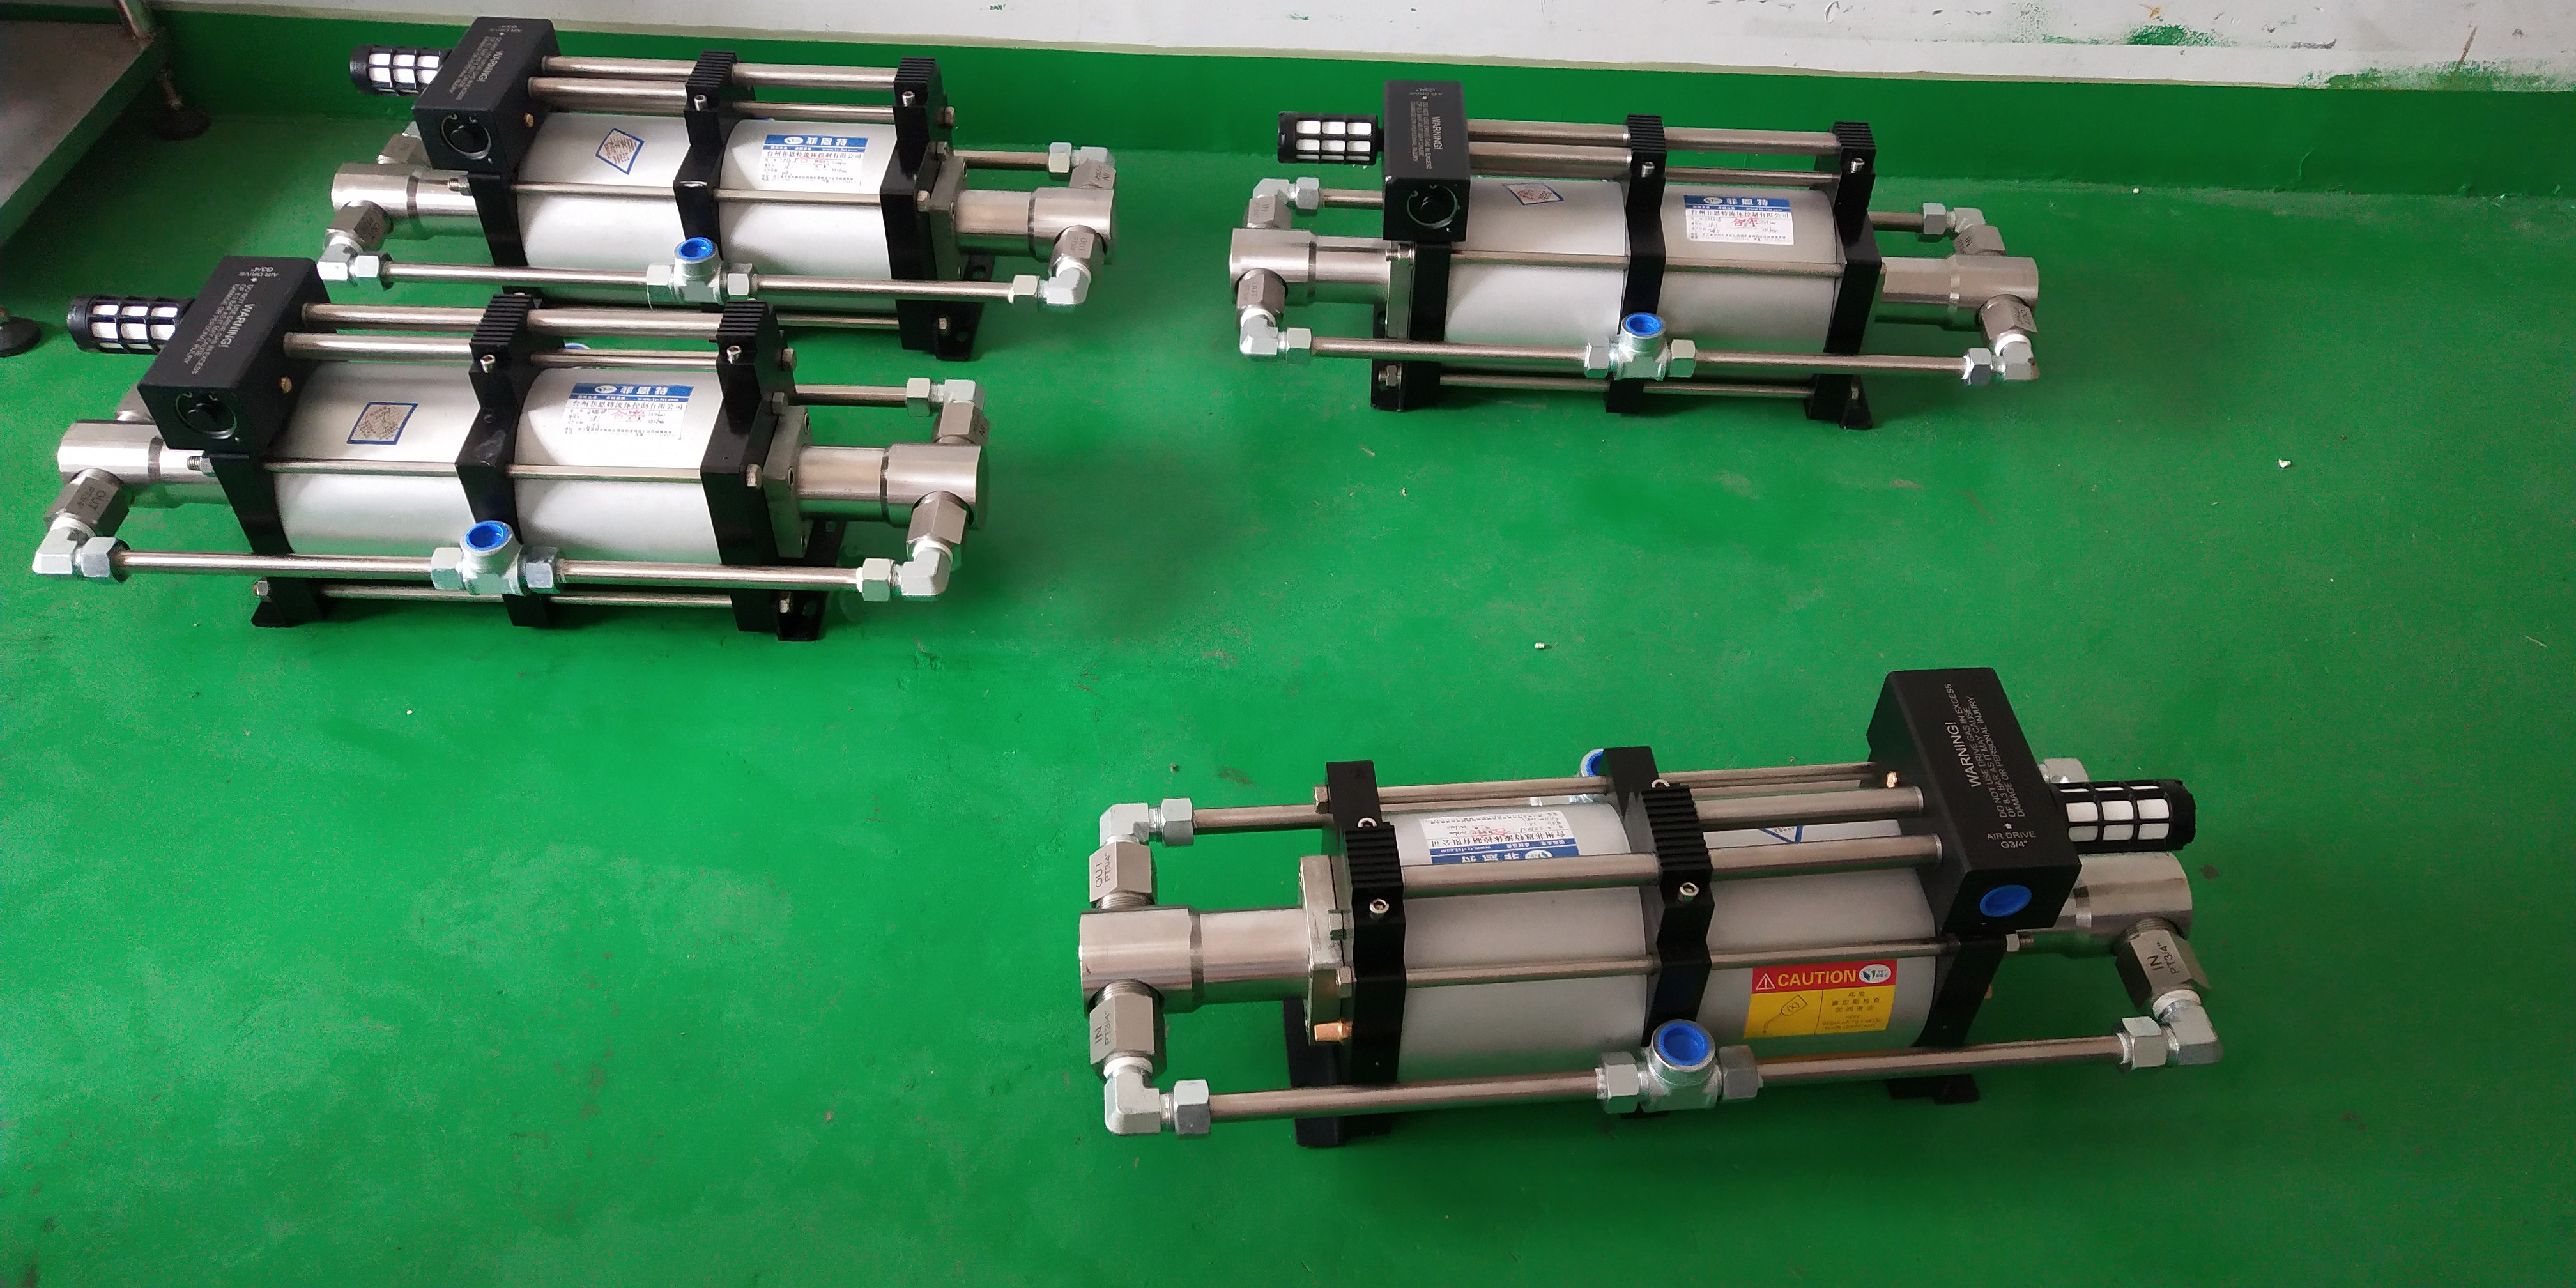 气动增压泵是由压缩空气驱动的,压缩空气是关键,选用不同的泵会决定